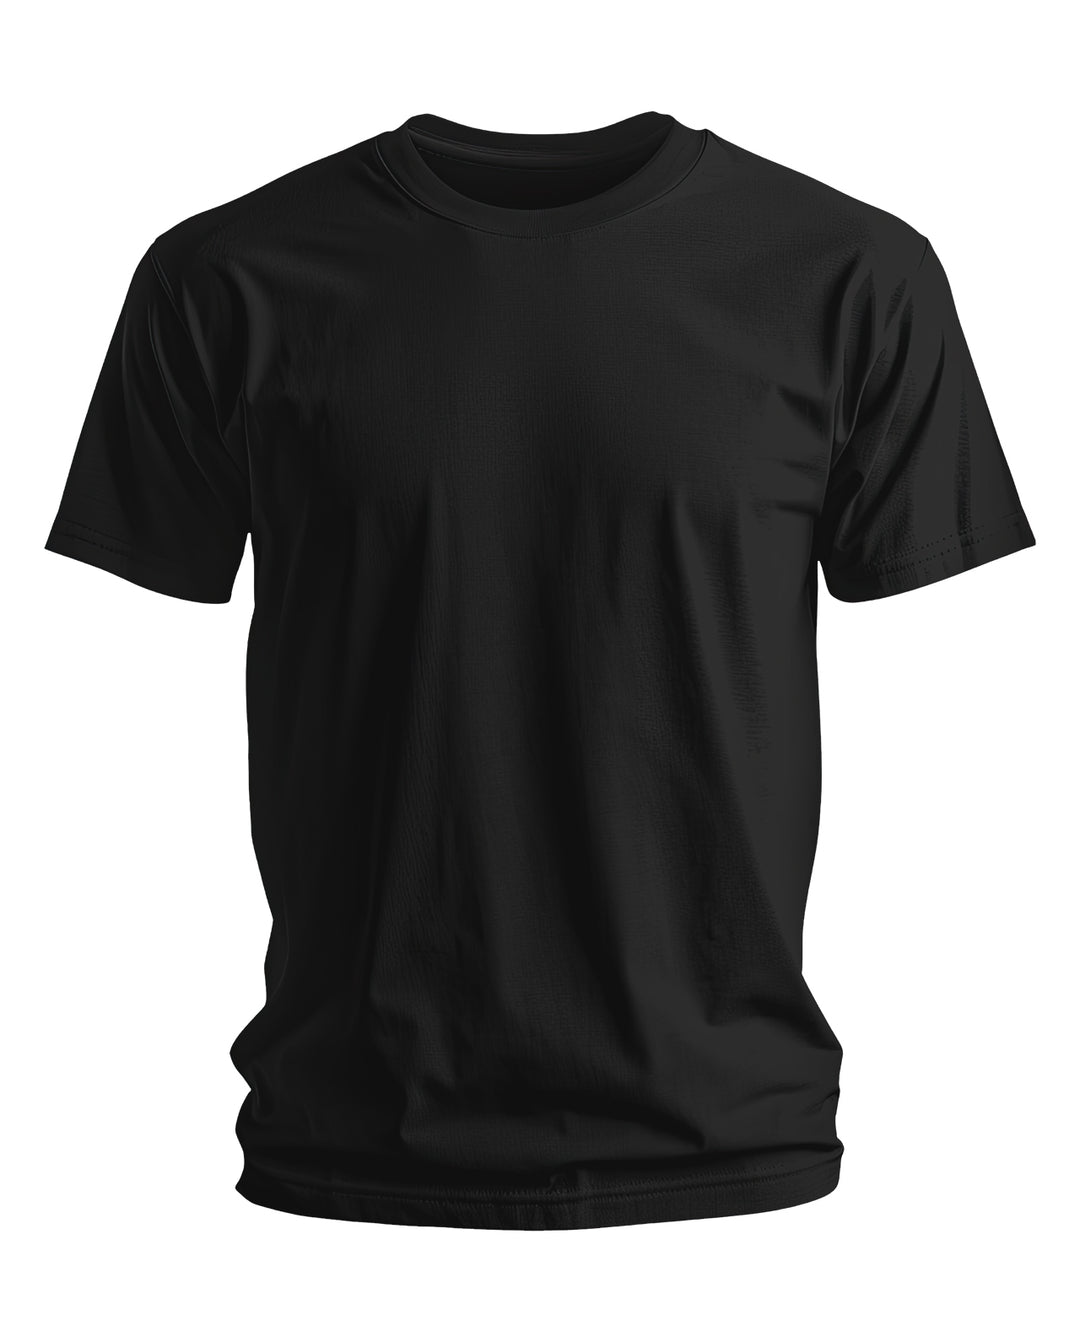 Trinizen Basics Supima Cotton T-shirt - Black